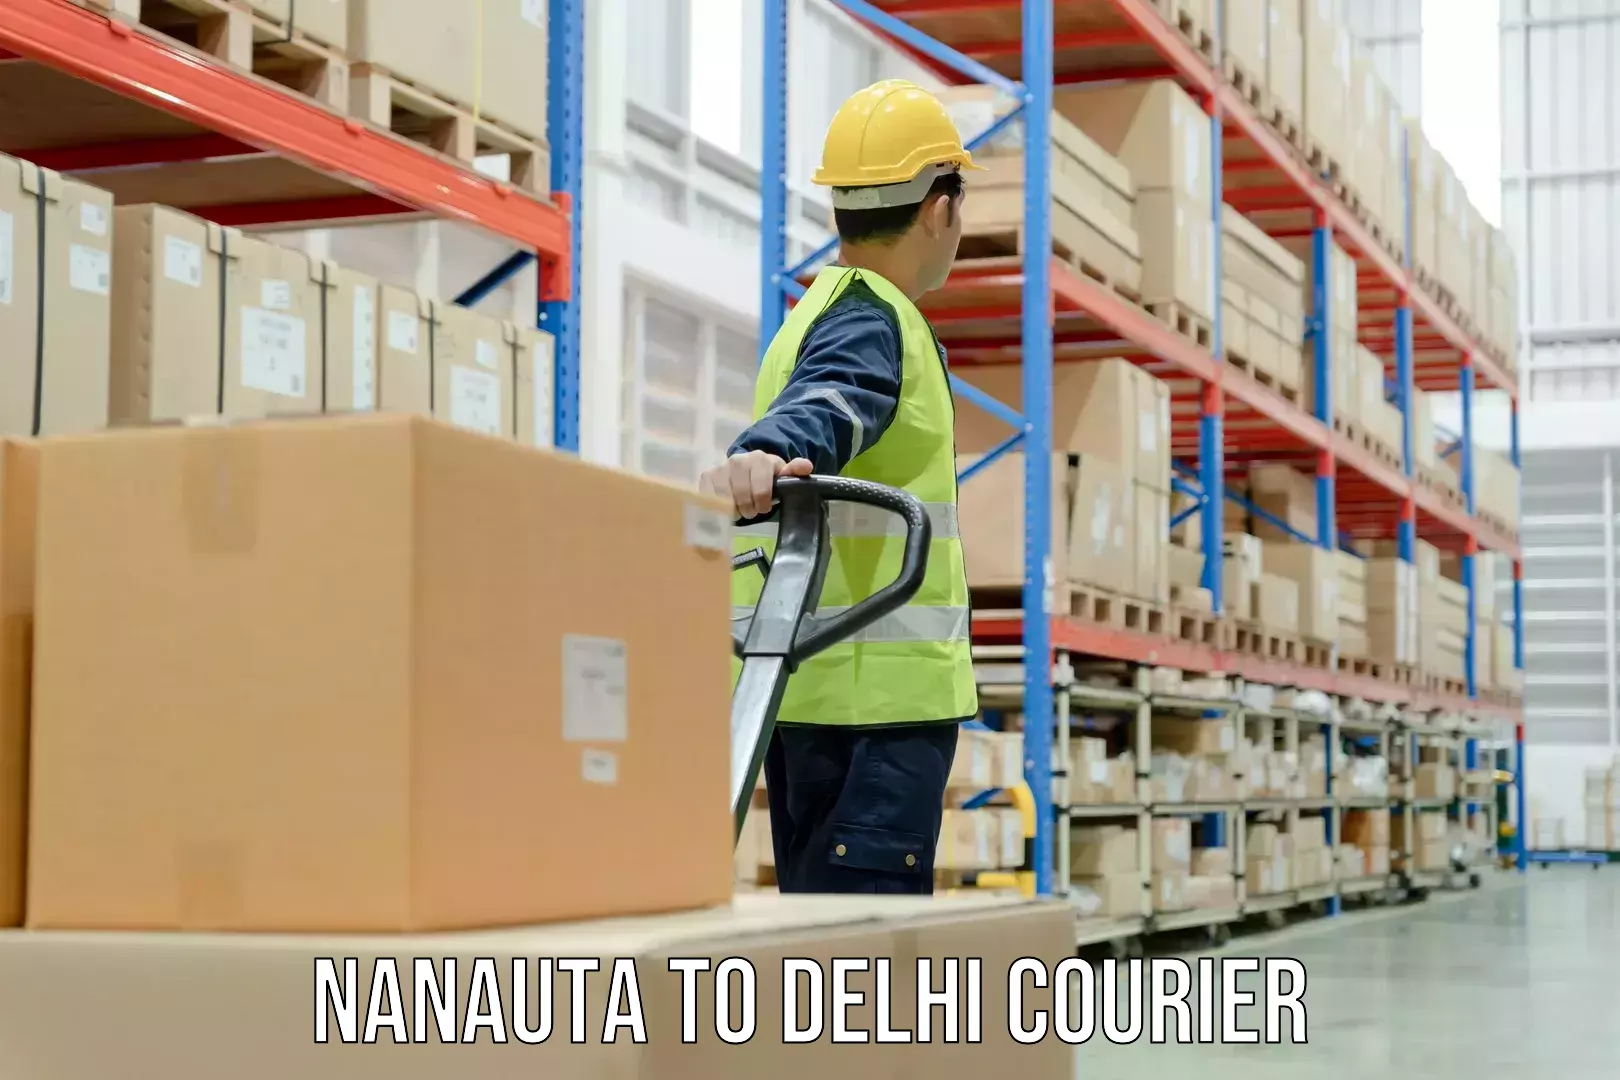 Overnight delivery Nanauta to NIT Delhi